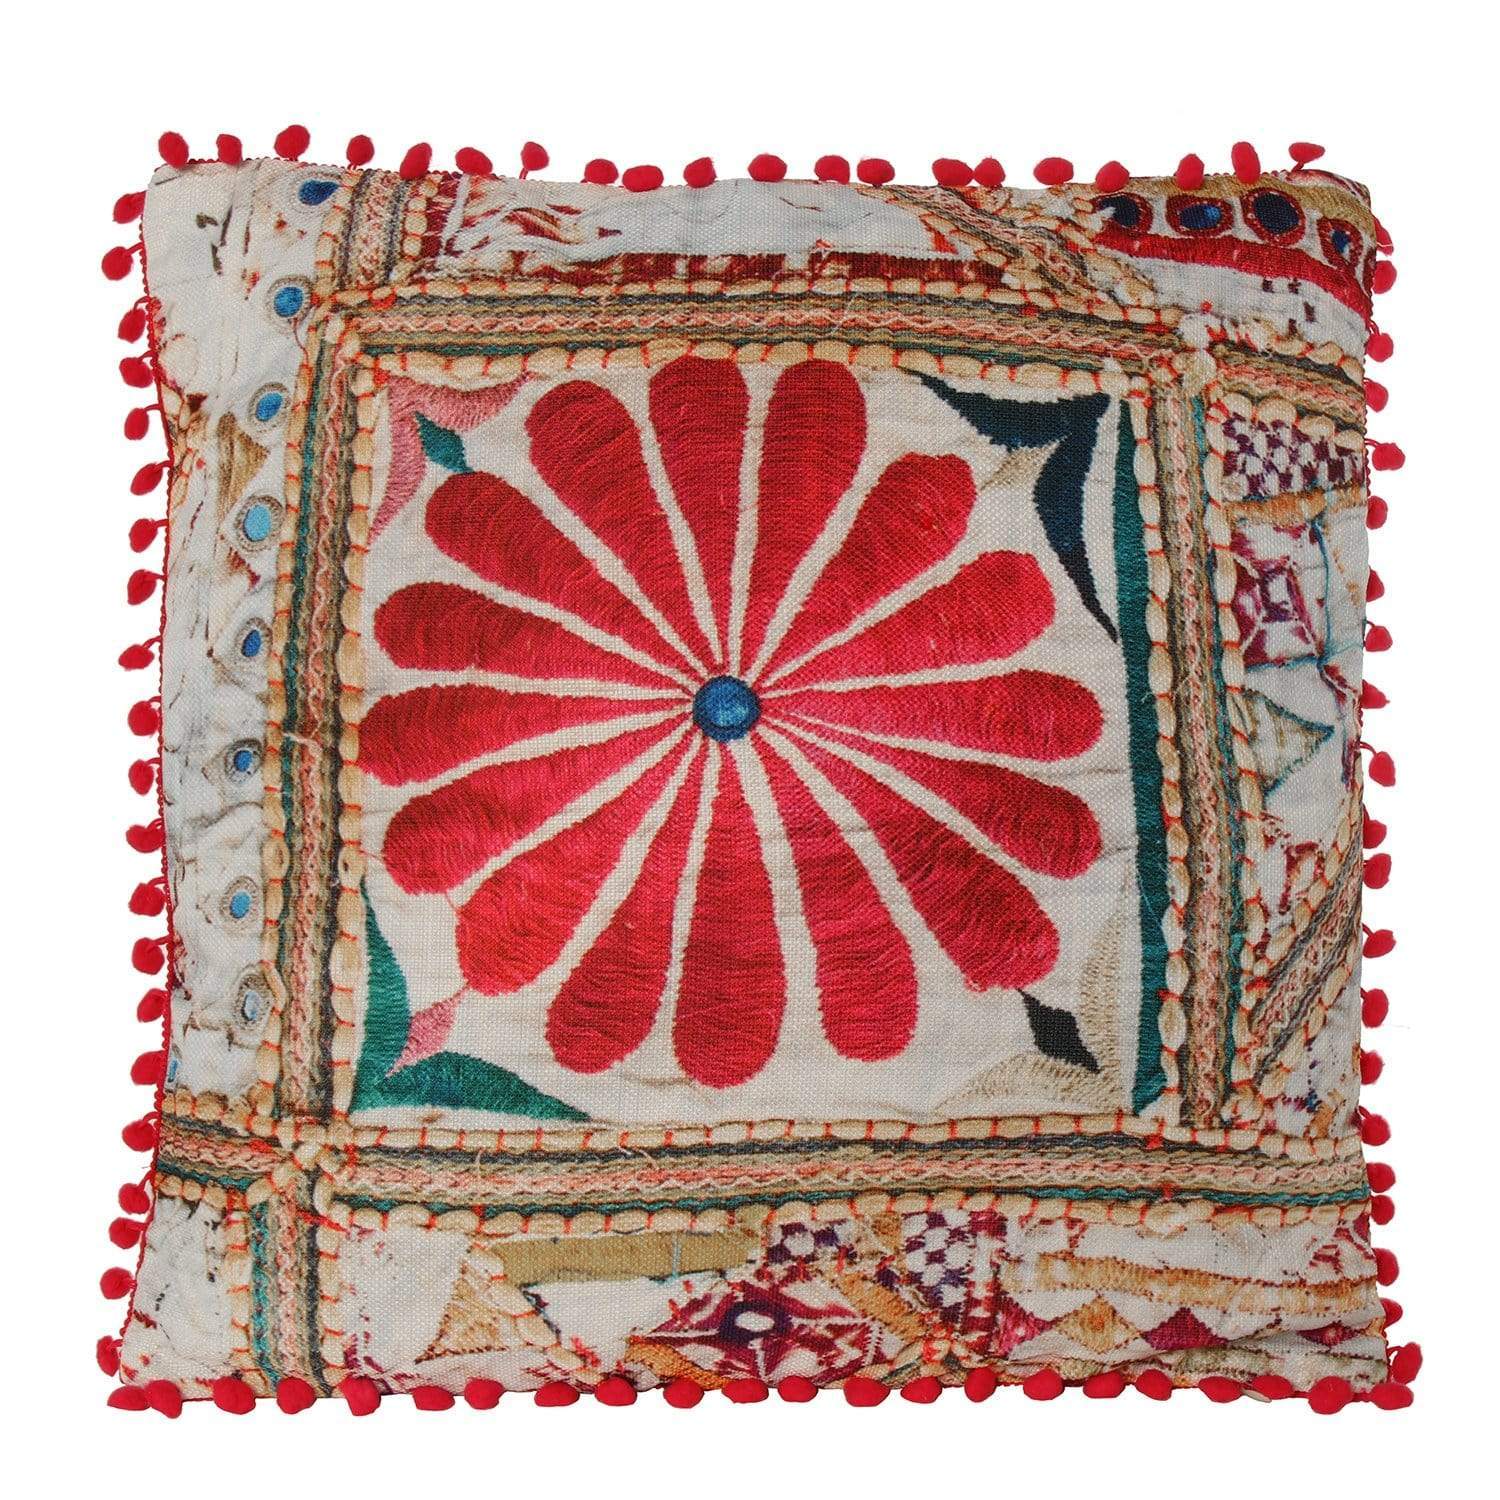 Messico Cuscino fiore stile etnico con pattern effetto ricamato con pompon 45 x 45 cm - Dolci pensieri gift